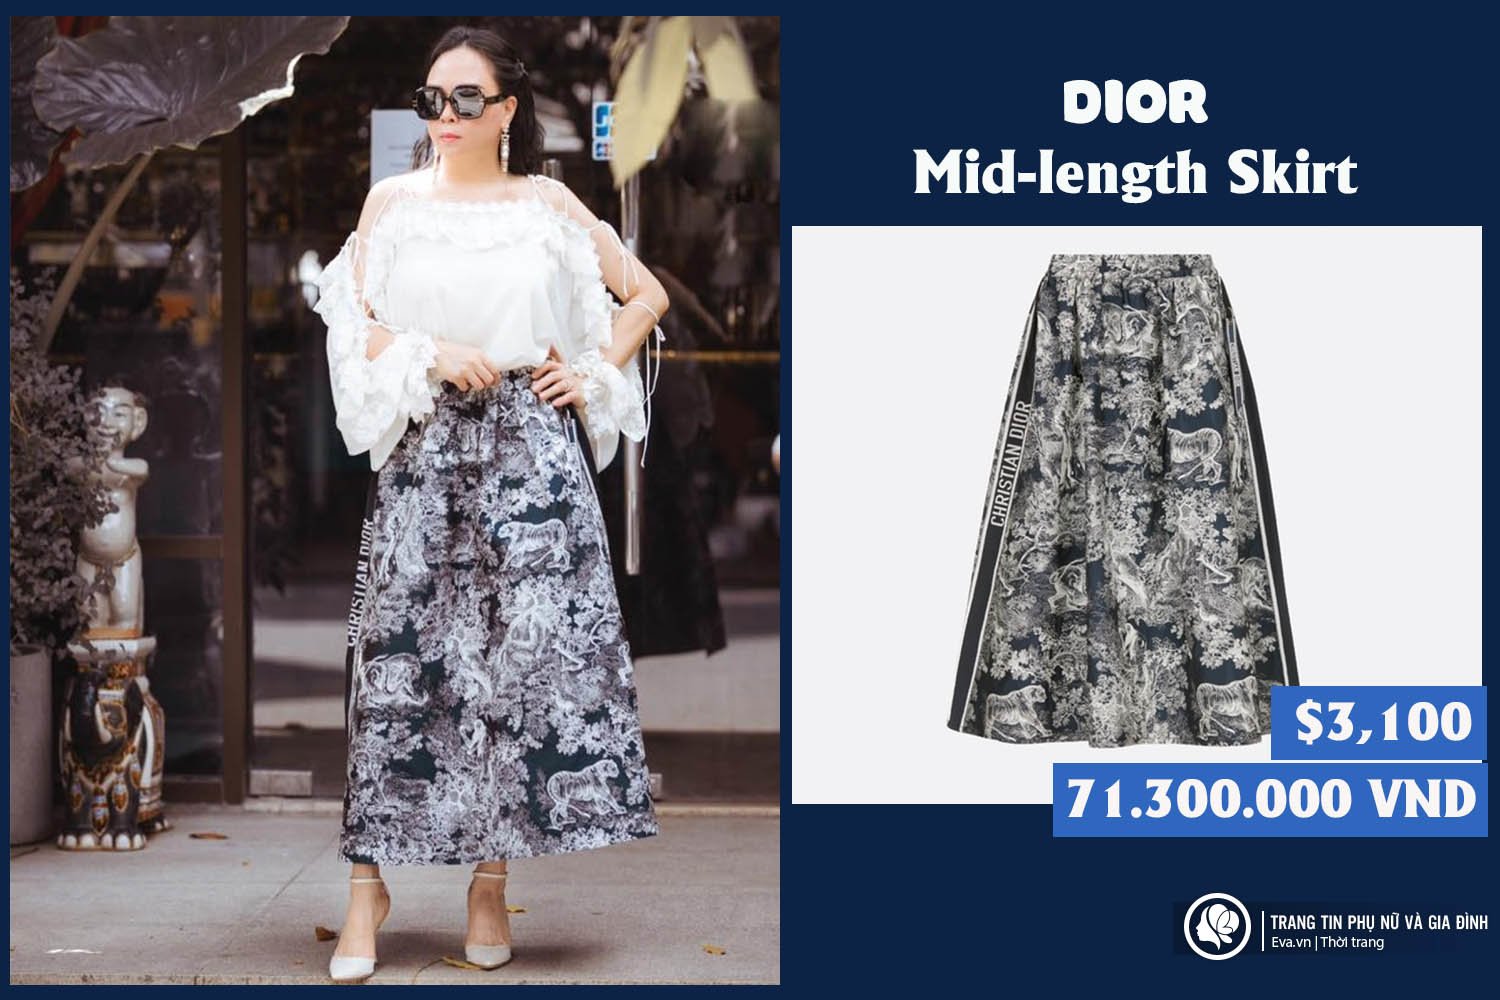 Chân Váy Xếp Ly Ren Đai Lưng Dior – Authentic Store